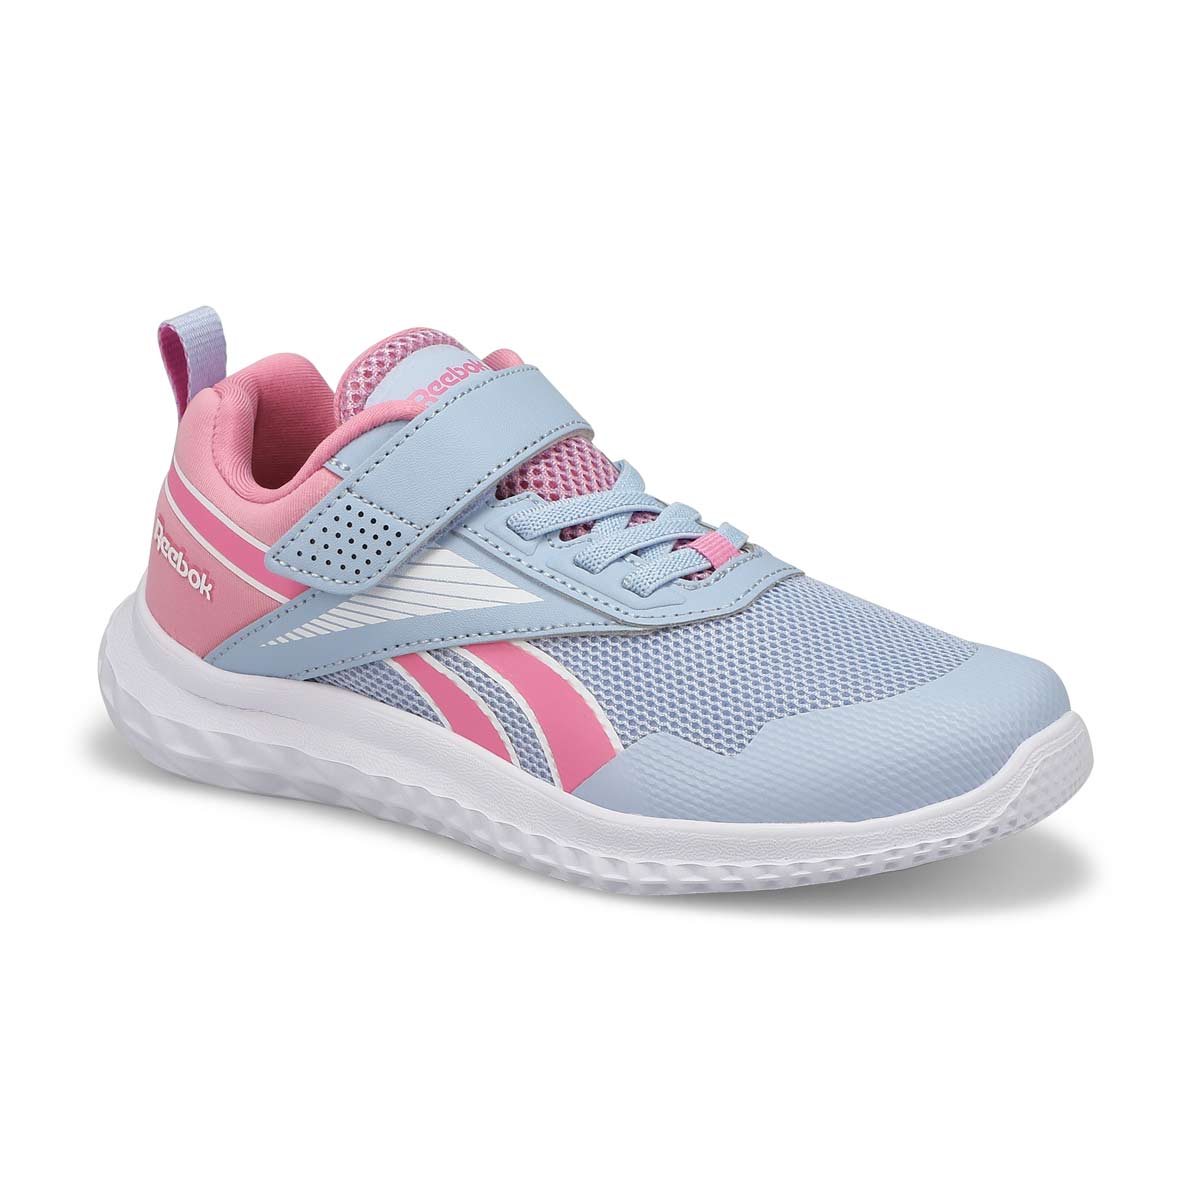 Girls Rush Runner 5 Sneaker - Blue/White/Pink